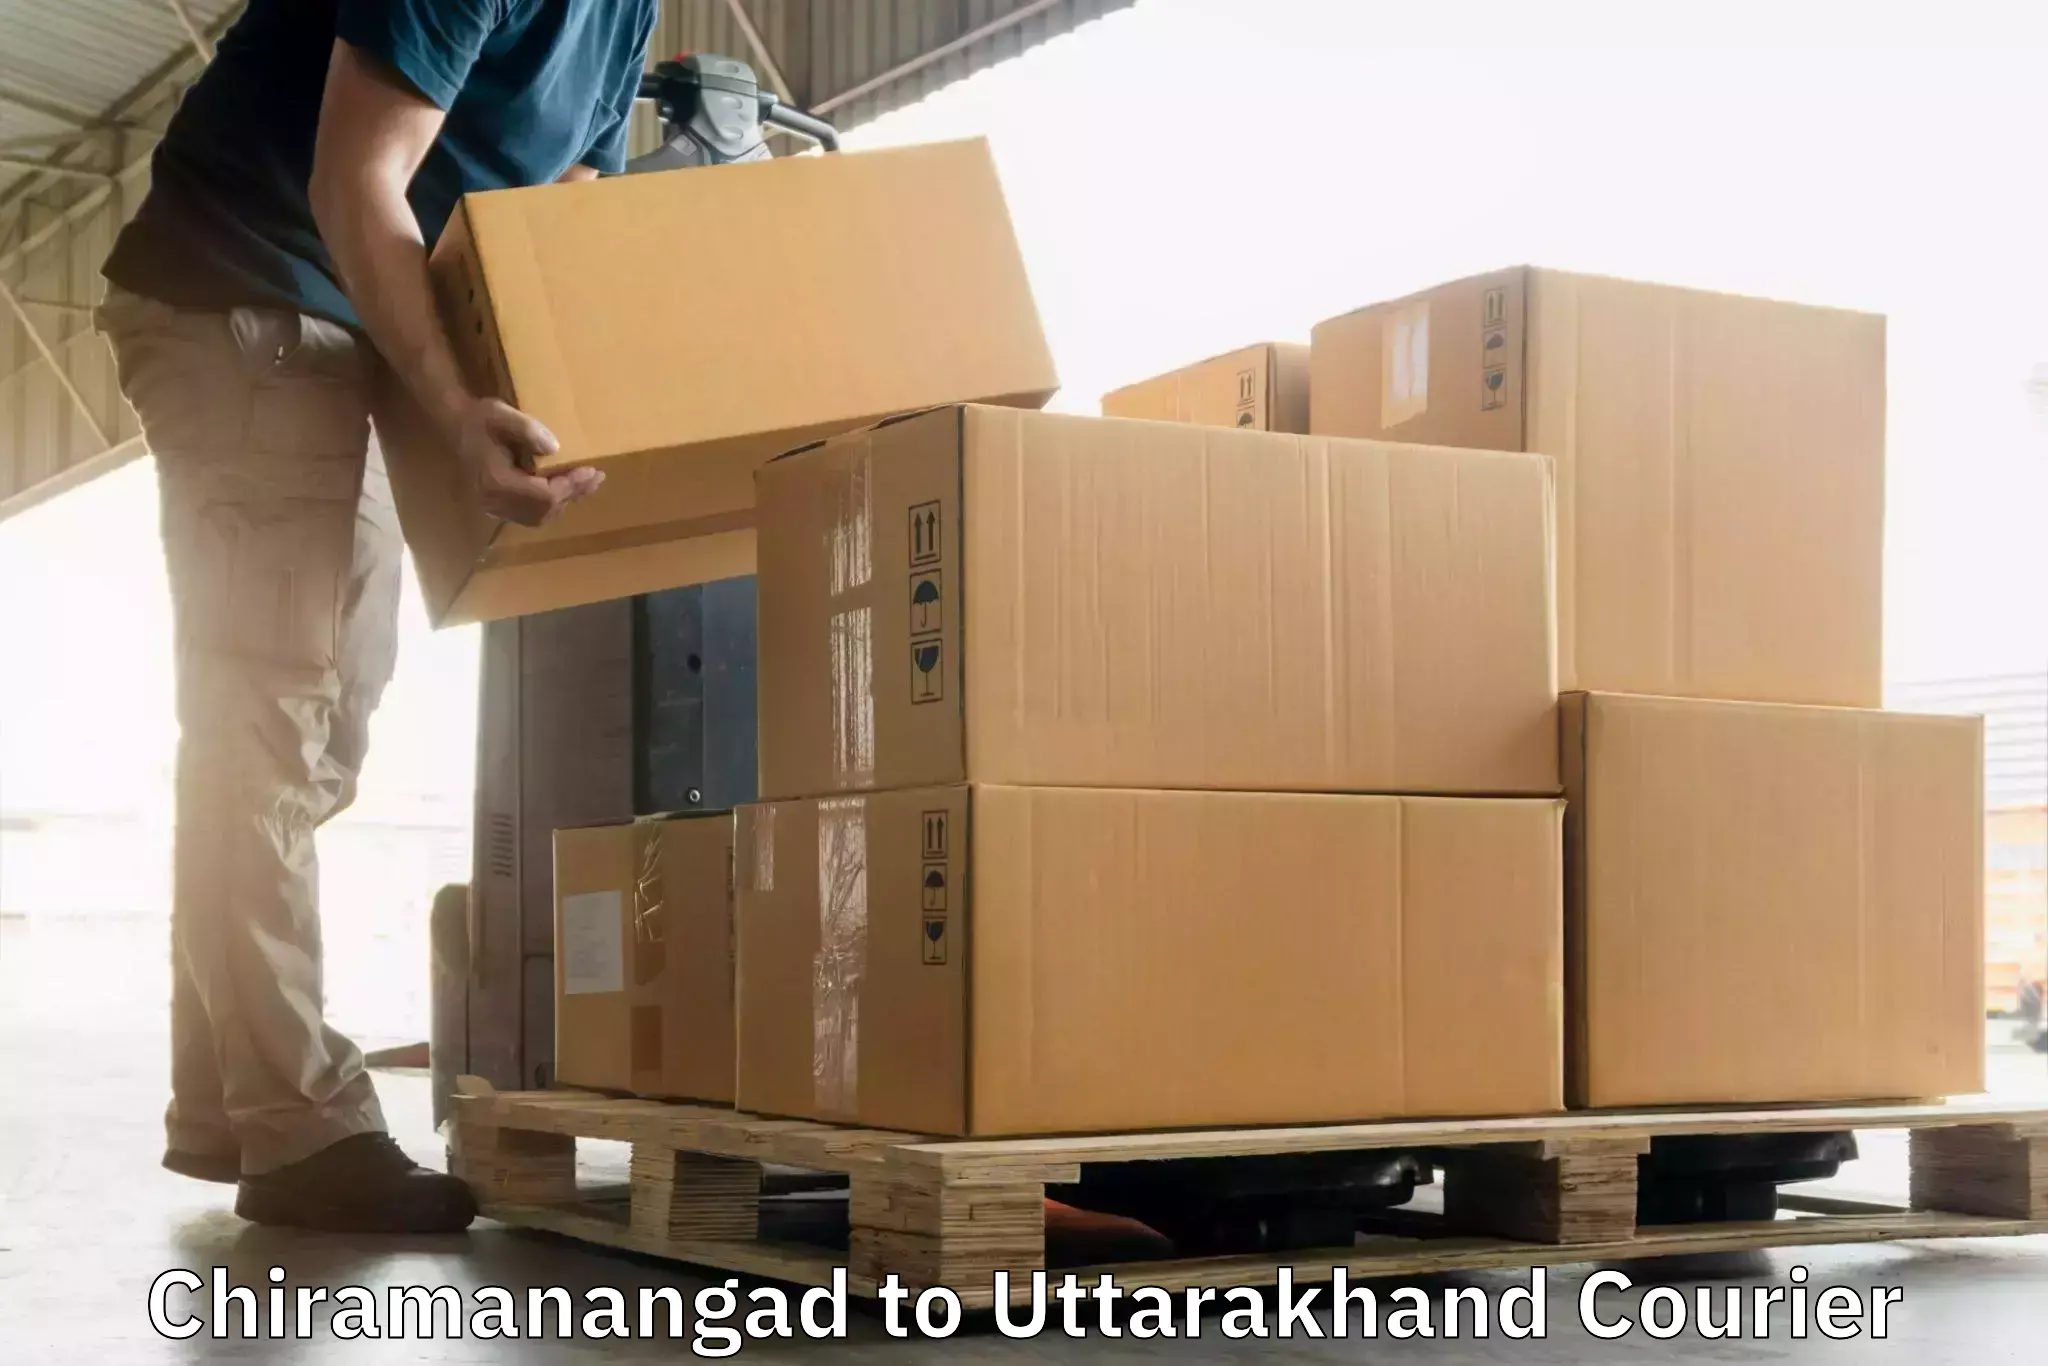 Multi-city courier Chiramanangad to Lansdowne